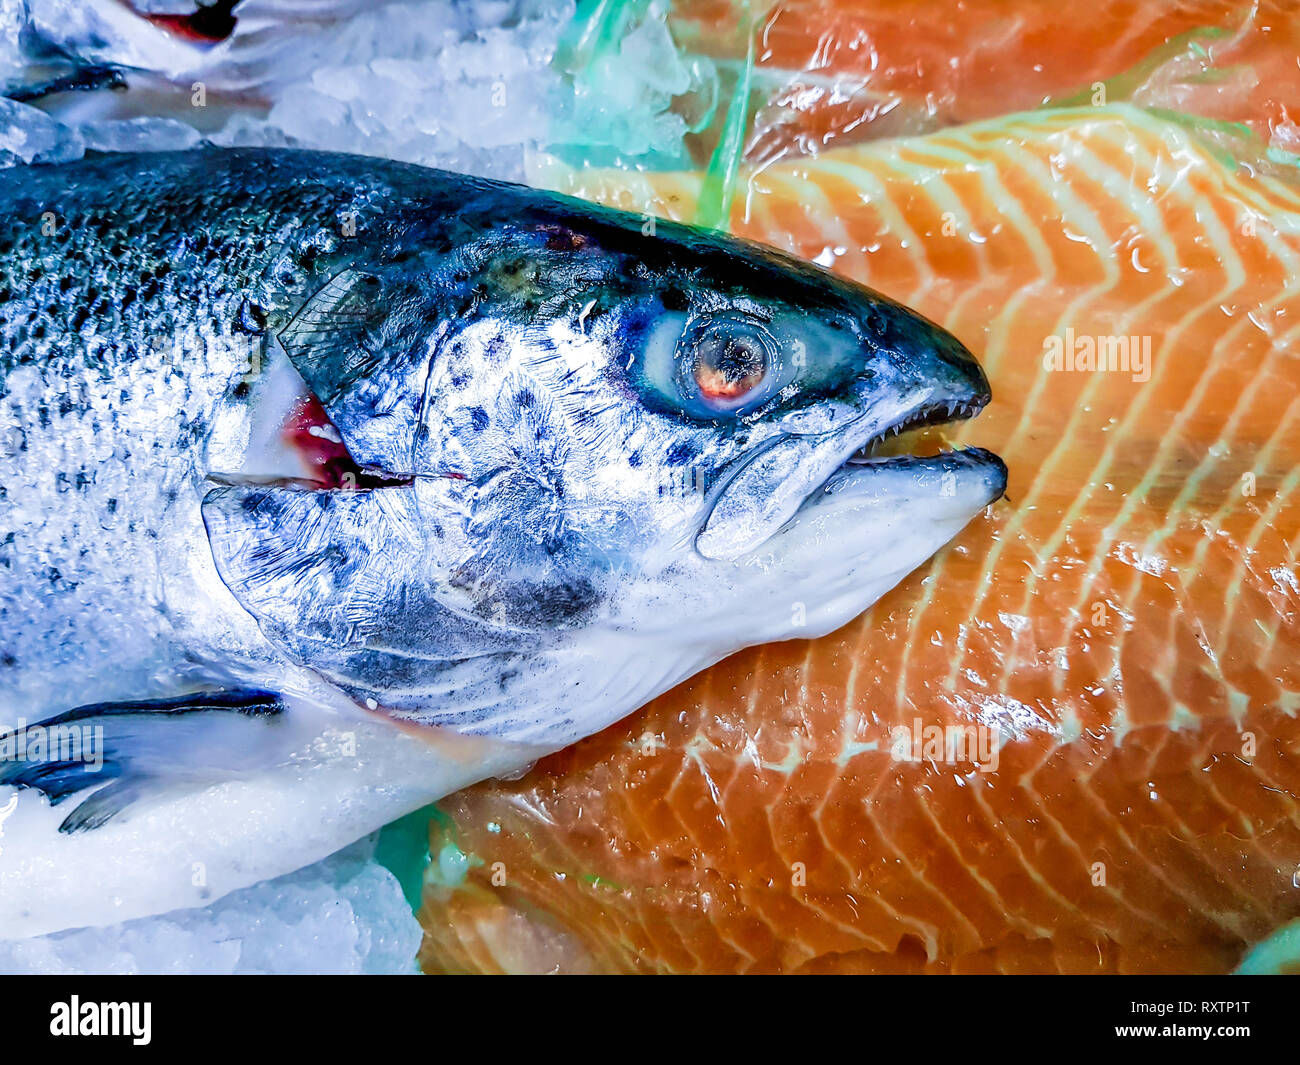 Vista ravvicinata di un pesce di salmone fresco su blocchi di ghiaccio, accanto a pezzi di filetto di pesce. Pesce congelato in vendita in un mercato locale. Foto Stock